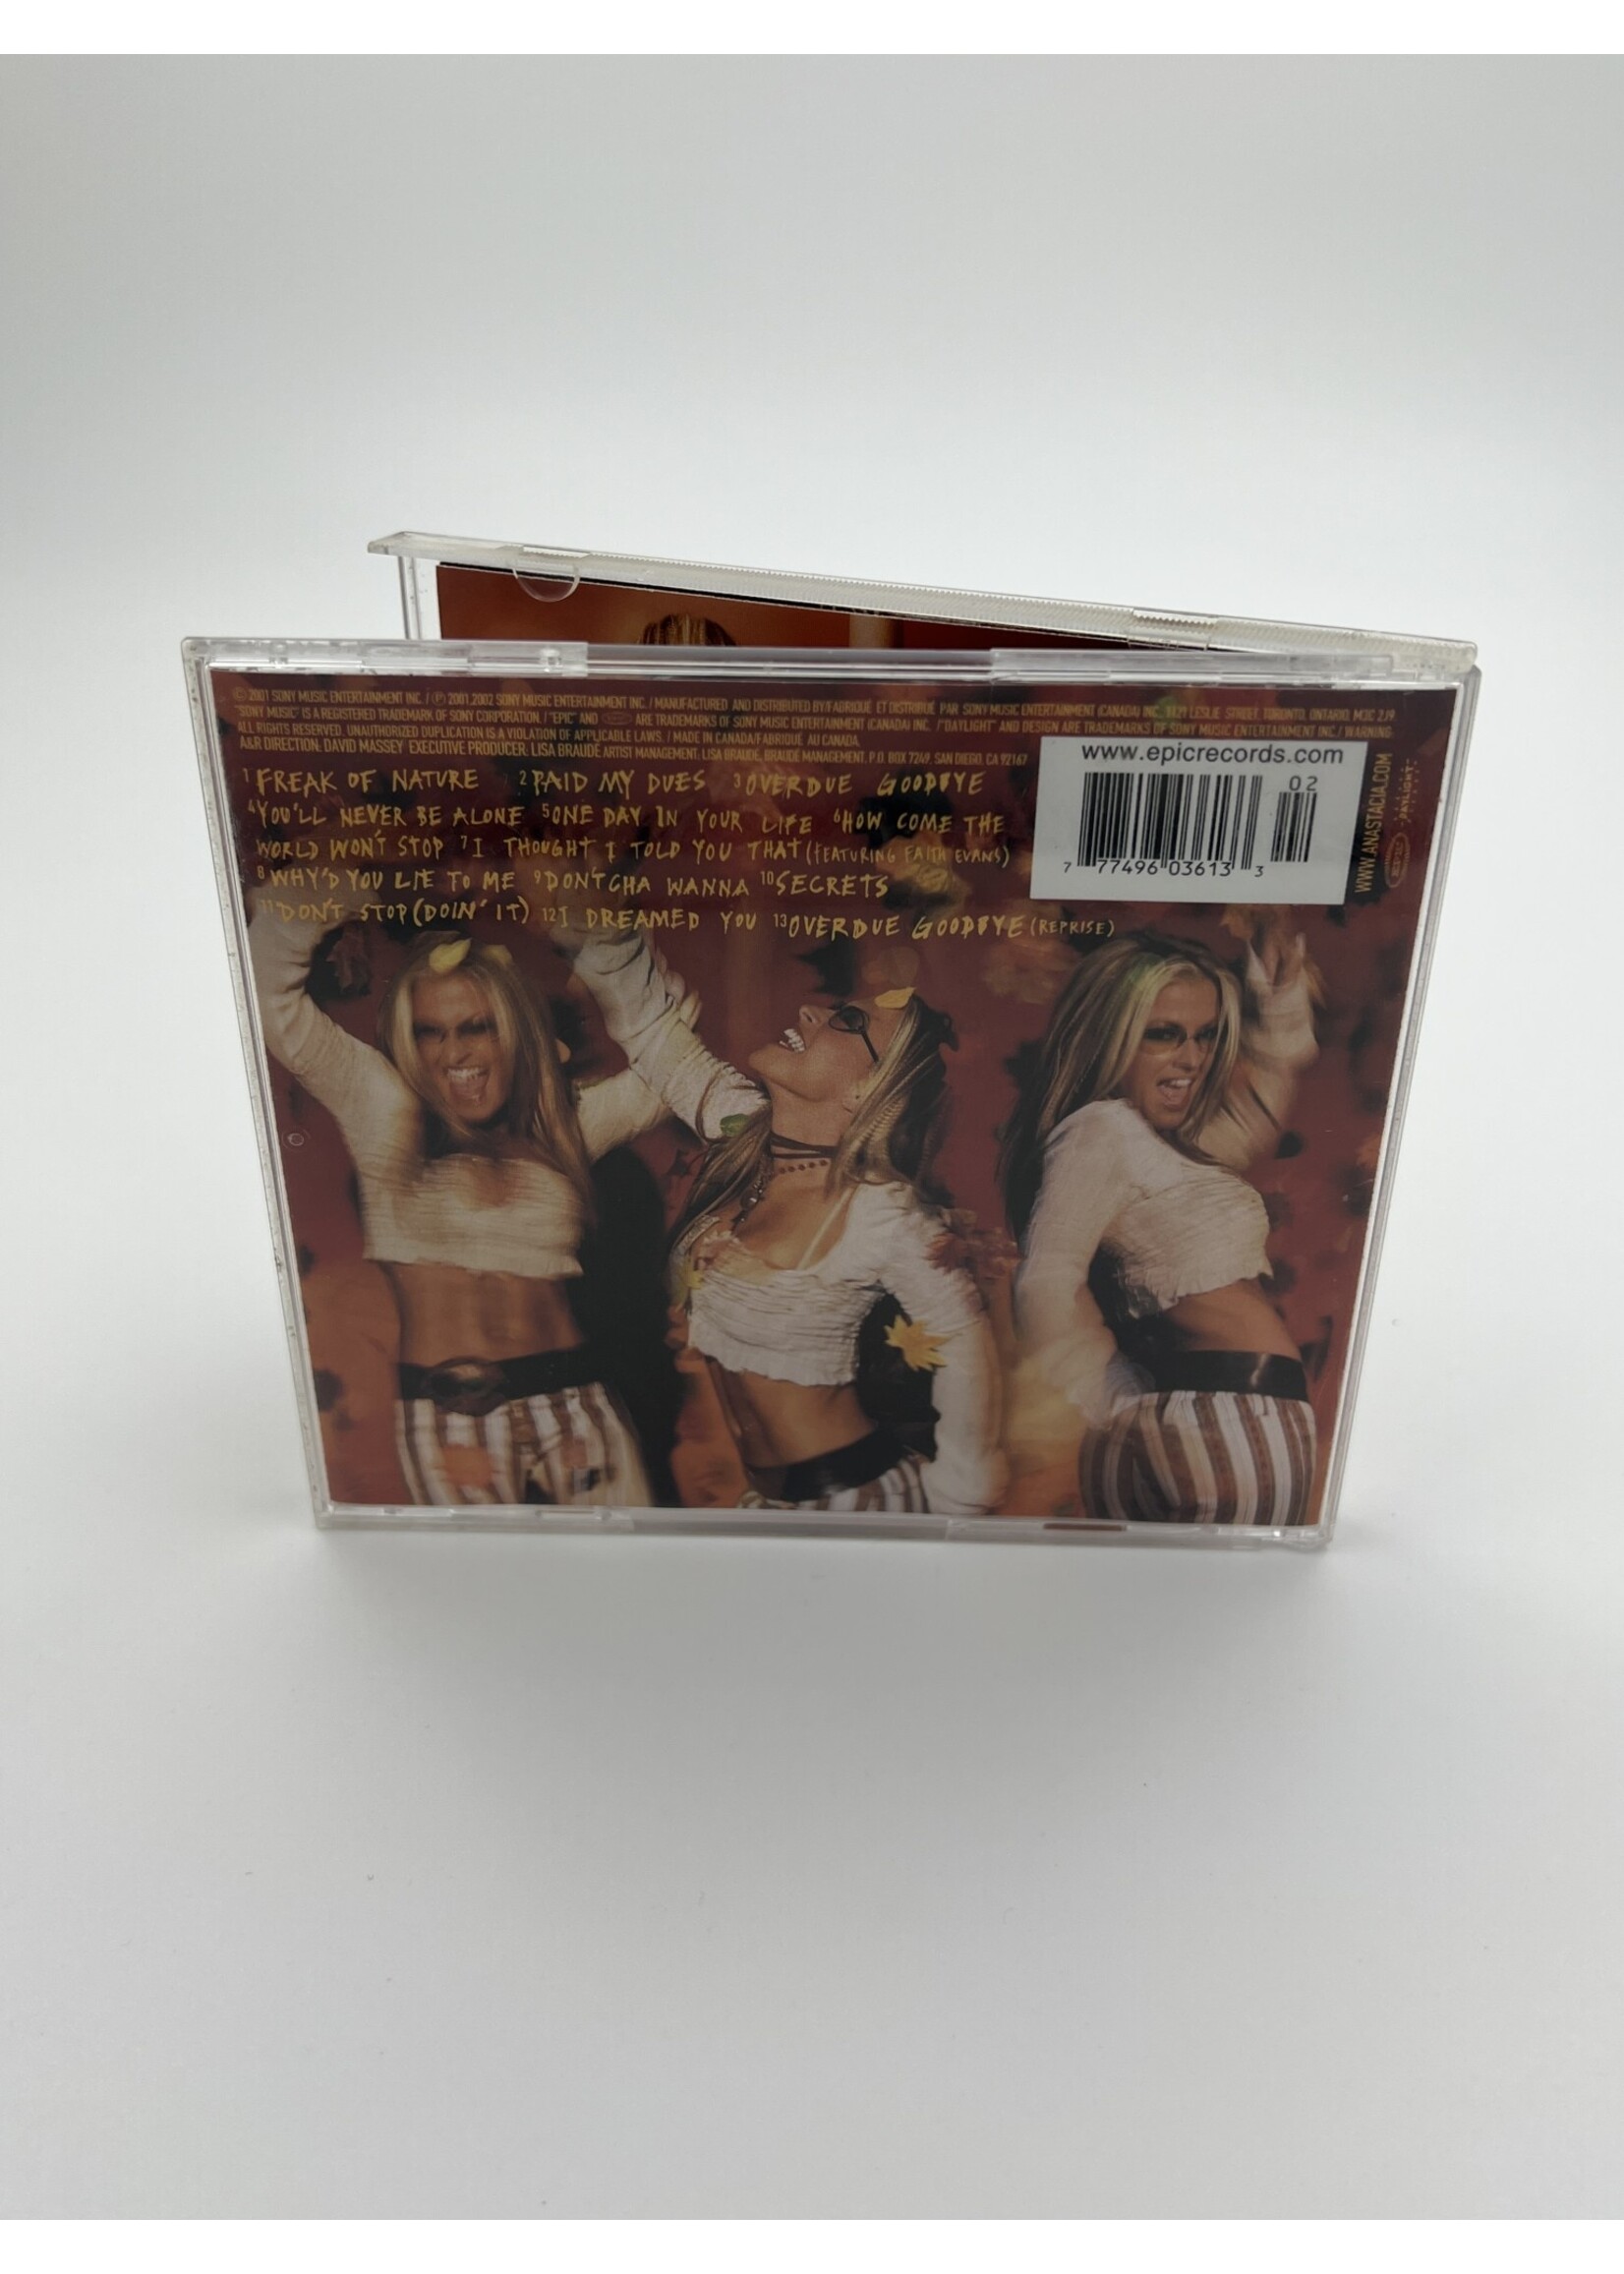 CD Anastacia Freak Of Nature CD